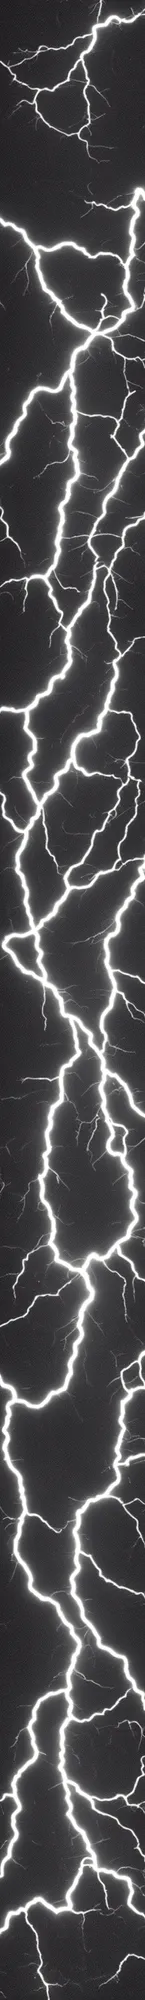 Prompt: single lightning bolt black background